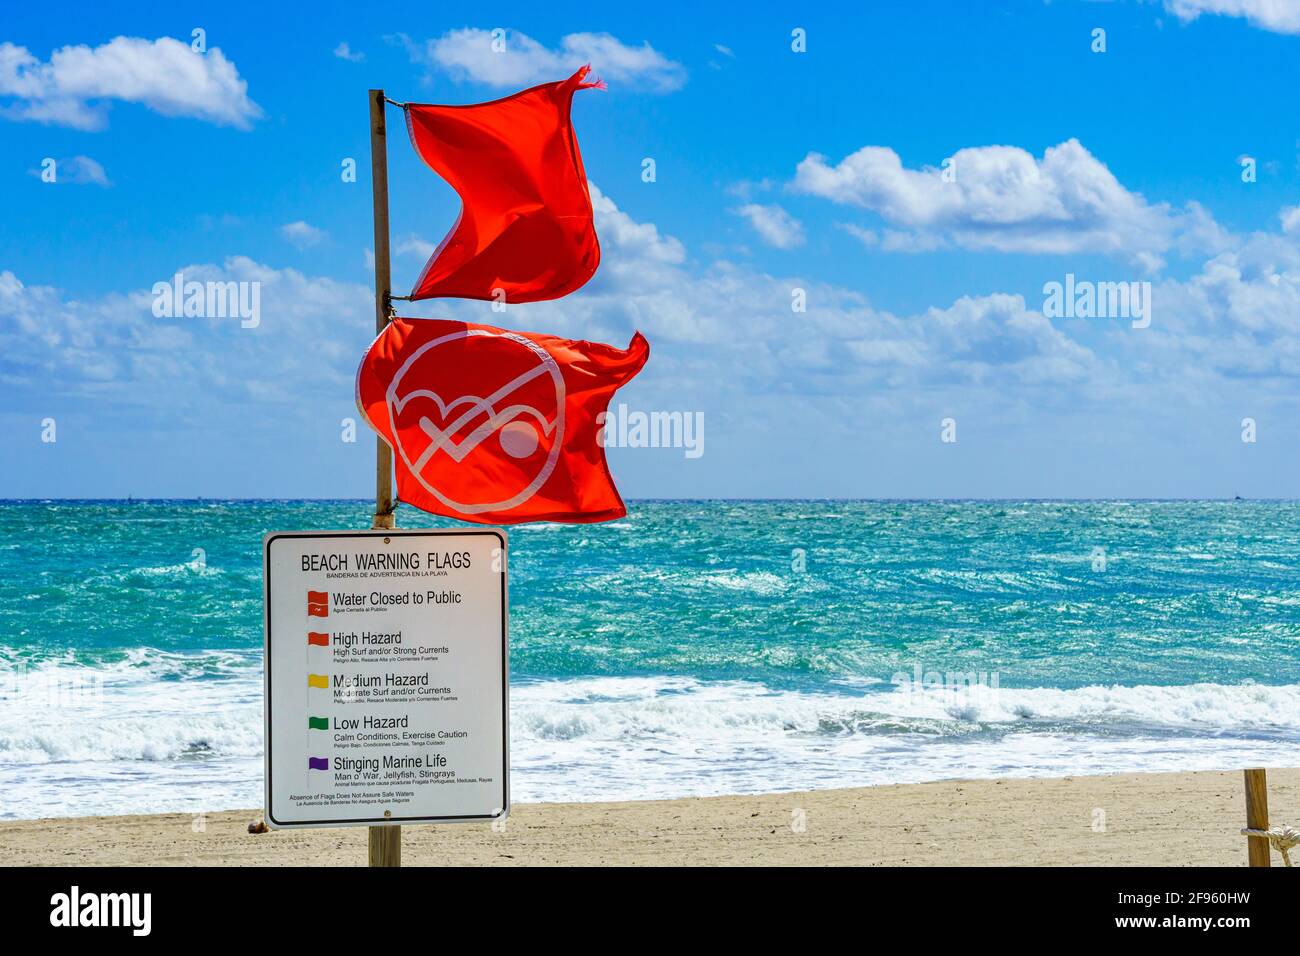 Das Wasser ist für öffentliche rote Warnflaggen und Informationszeichen vor dem rauhen, rauhen Ozean - Hollywood, Florida, USA, geschlossen Stockfoto